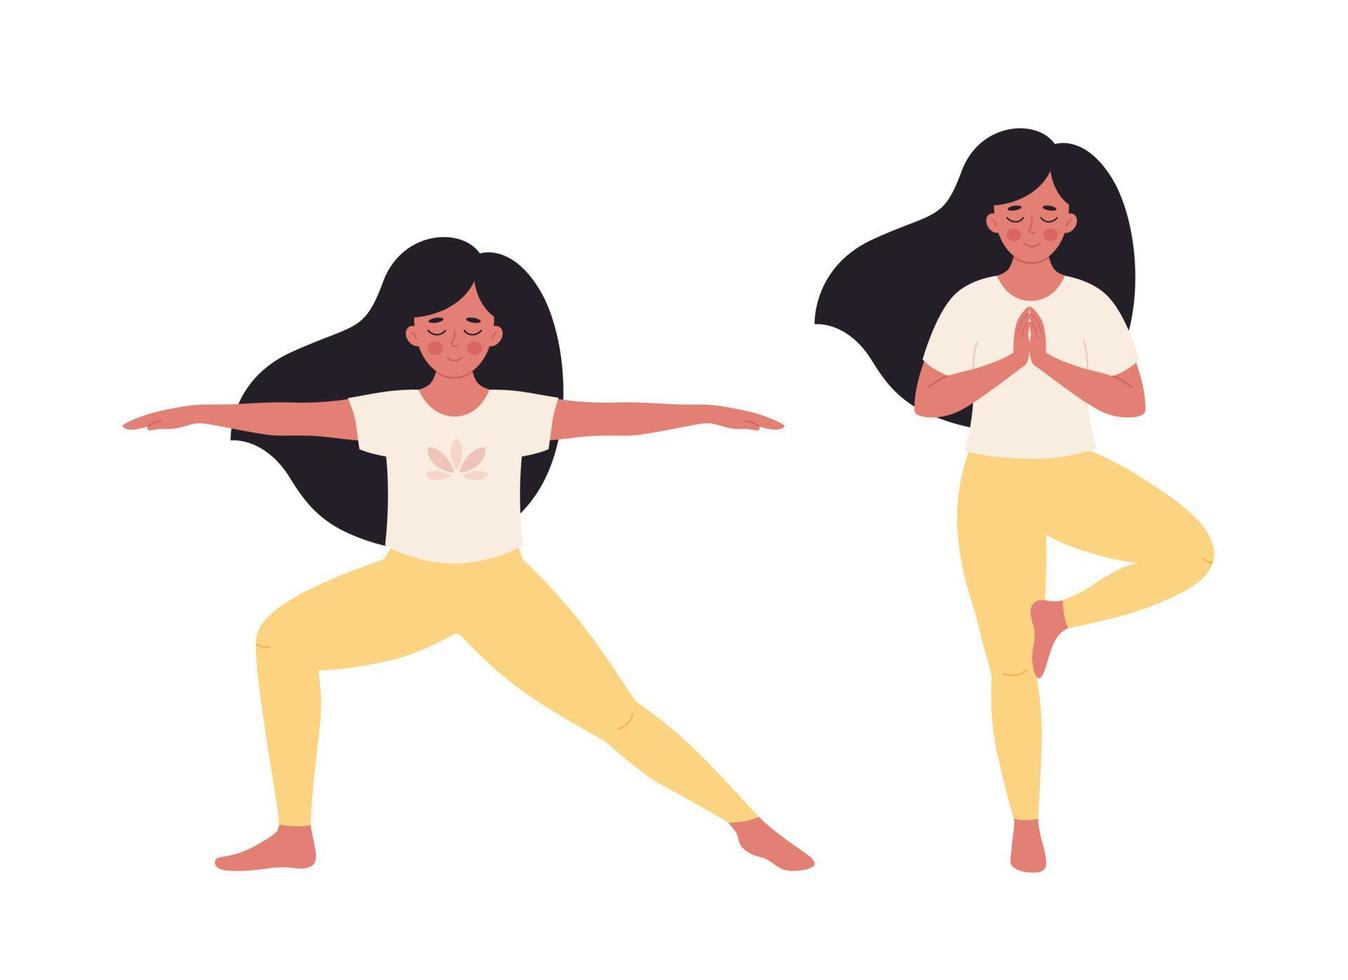 vrouw die yoga doet. gezonde levensstijl, zelfzorg, yoga, meditatie, mentaal welzijn. vector